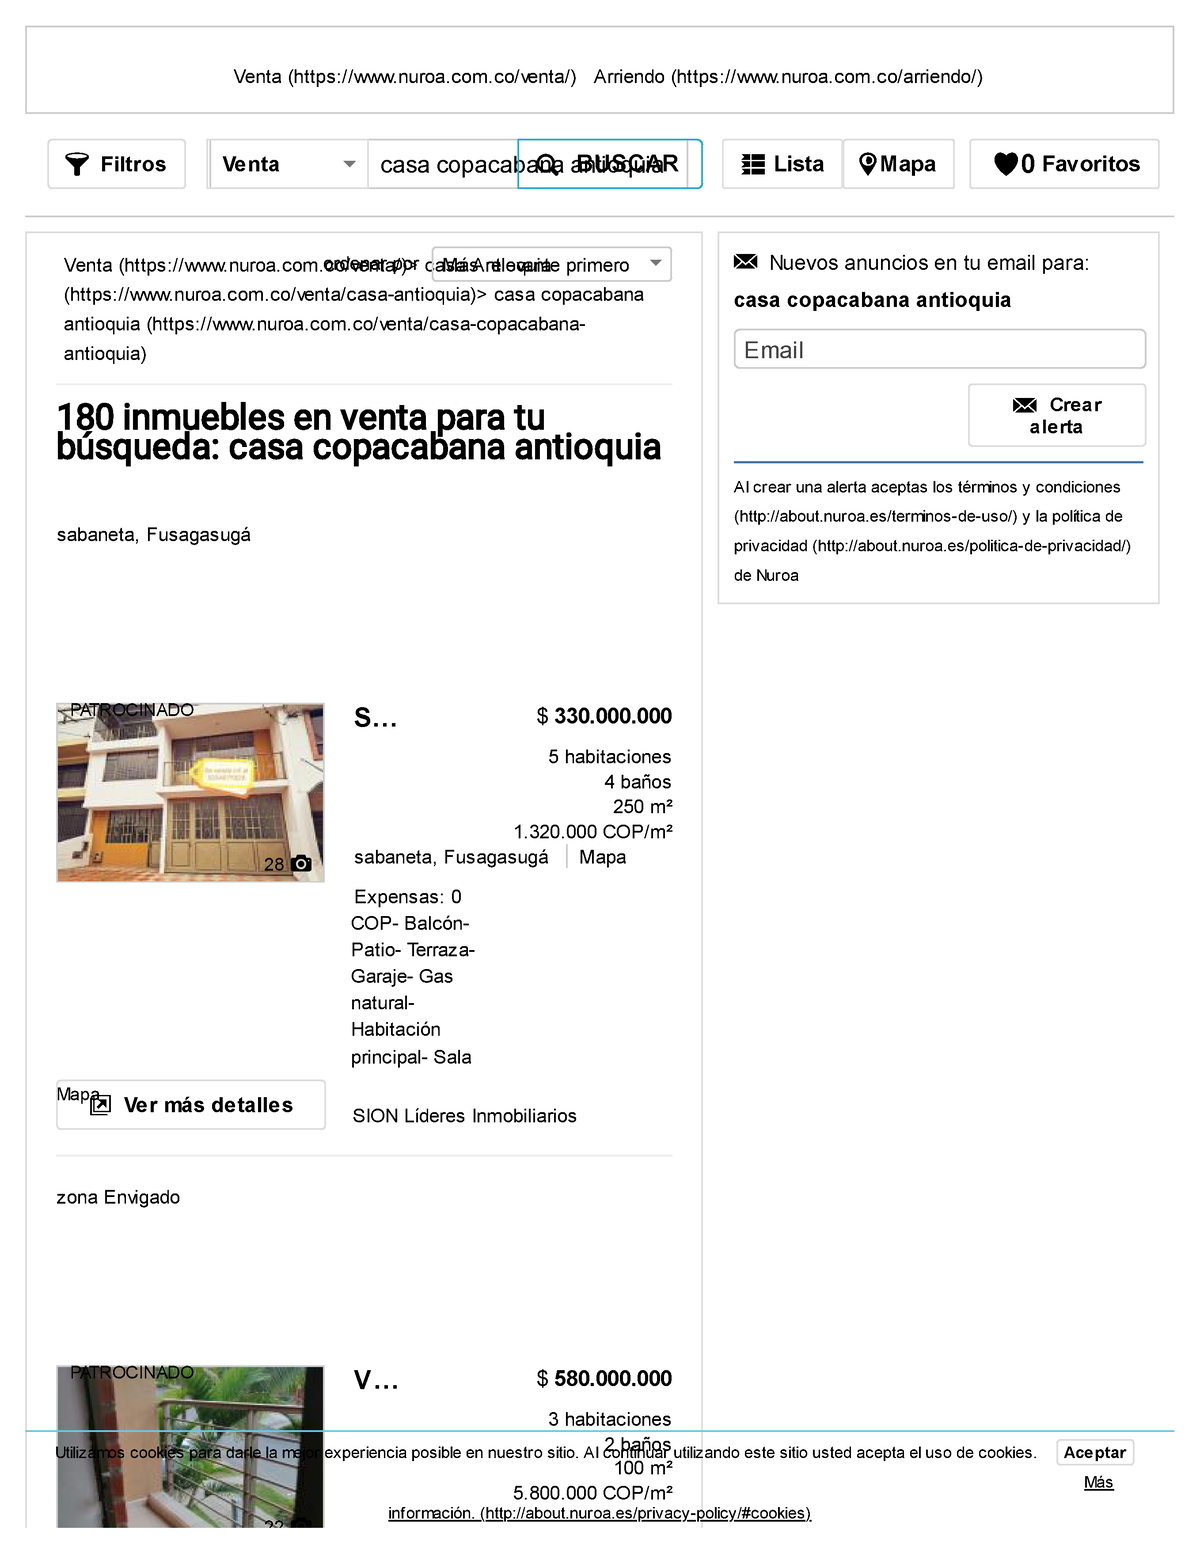 Casa Copacabana Antioquia - 180 casas en venta en Antioquia de Nuroa - 5  habitaciones 4 baños 250 m² - Studocu